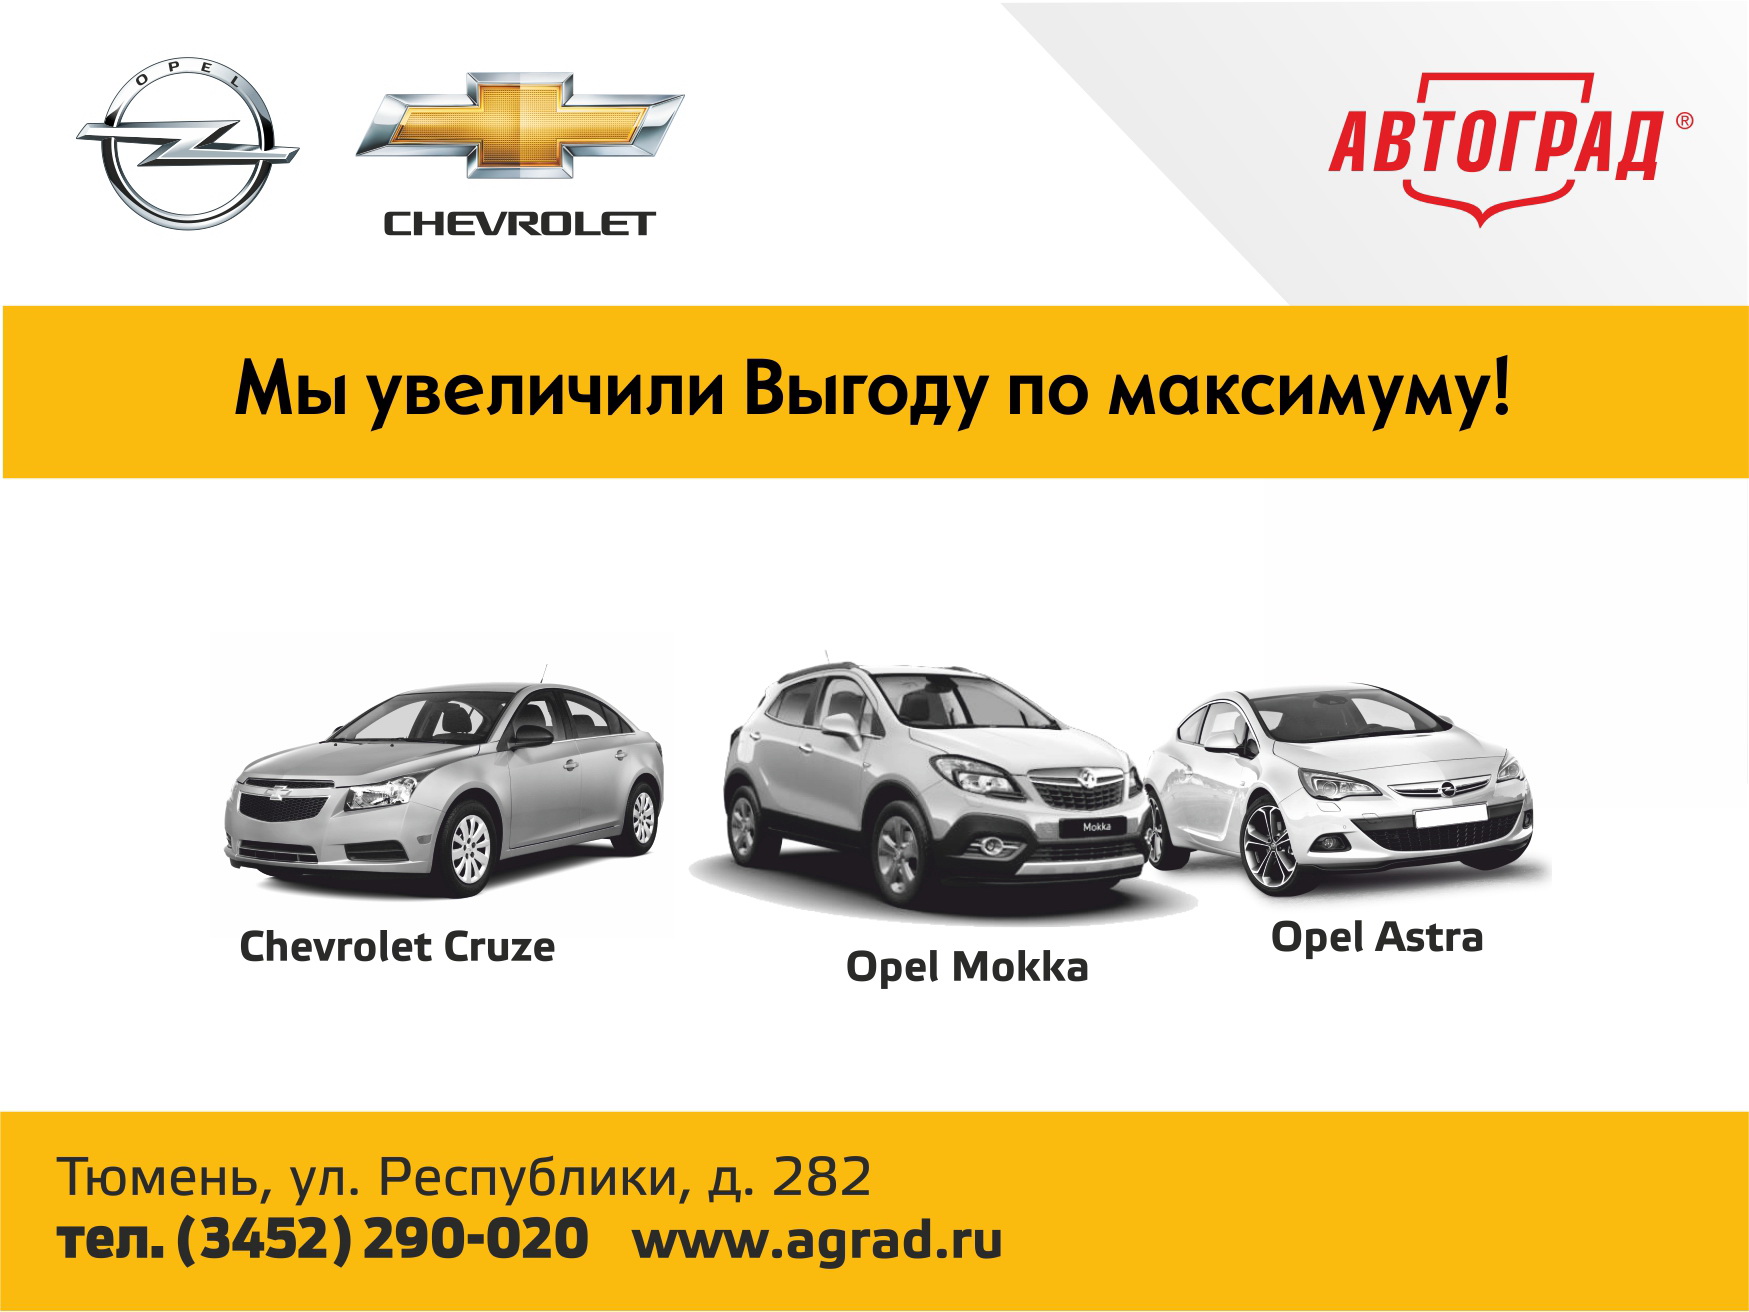 Автомобили Opel и Chevrolet в Автограде – максимальная выгода!